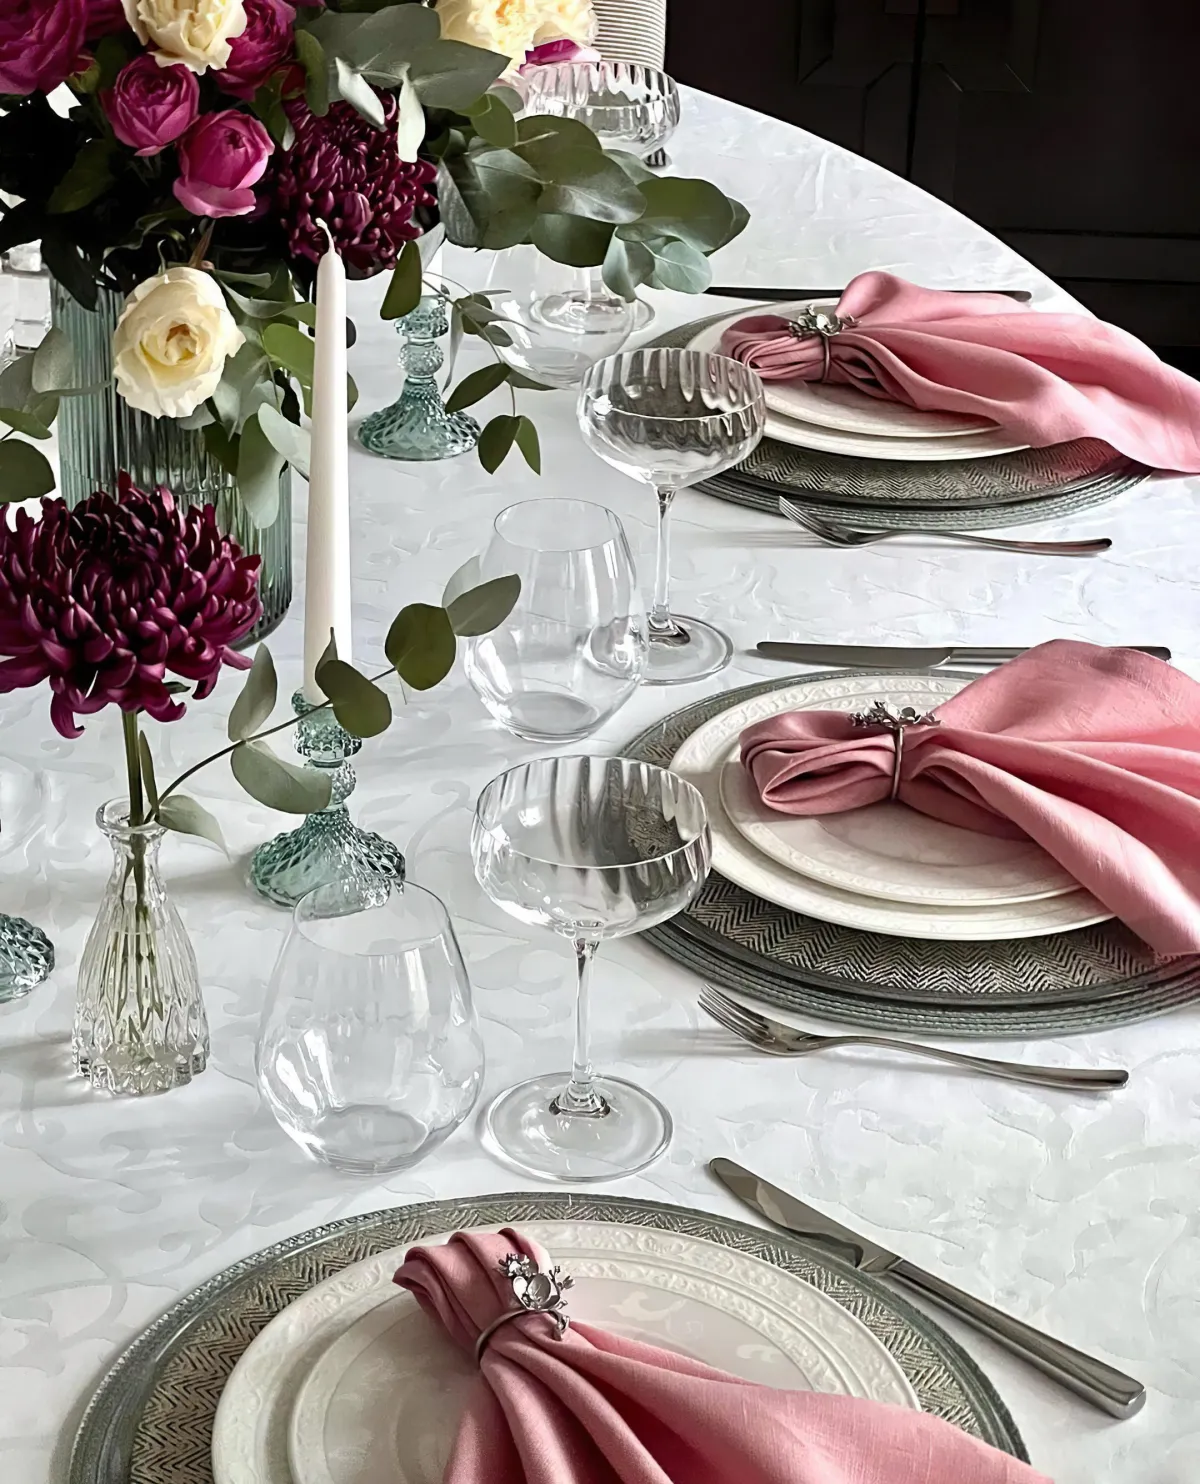 esstisch dekorieren ideen rosafarbene servietten aus leinen rosen in glasvasen